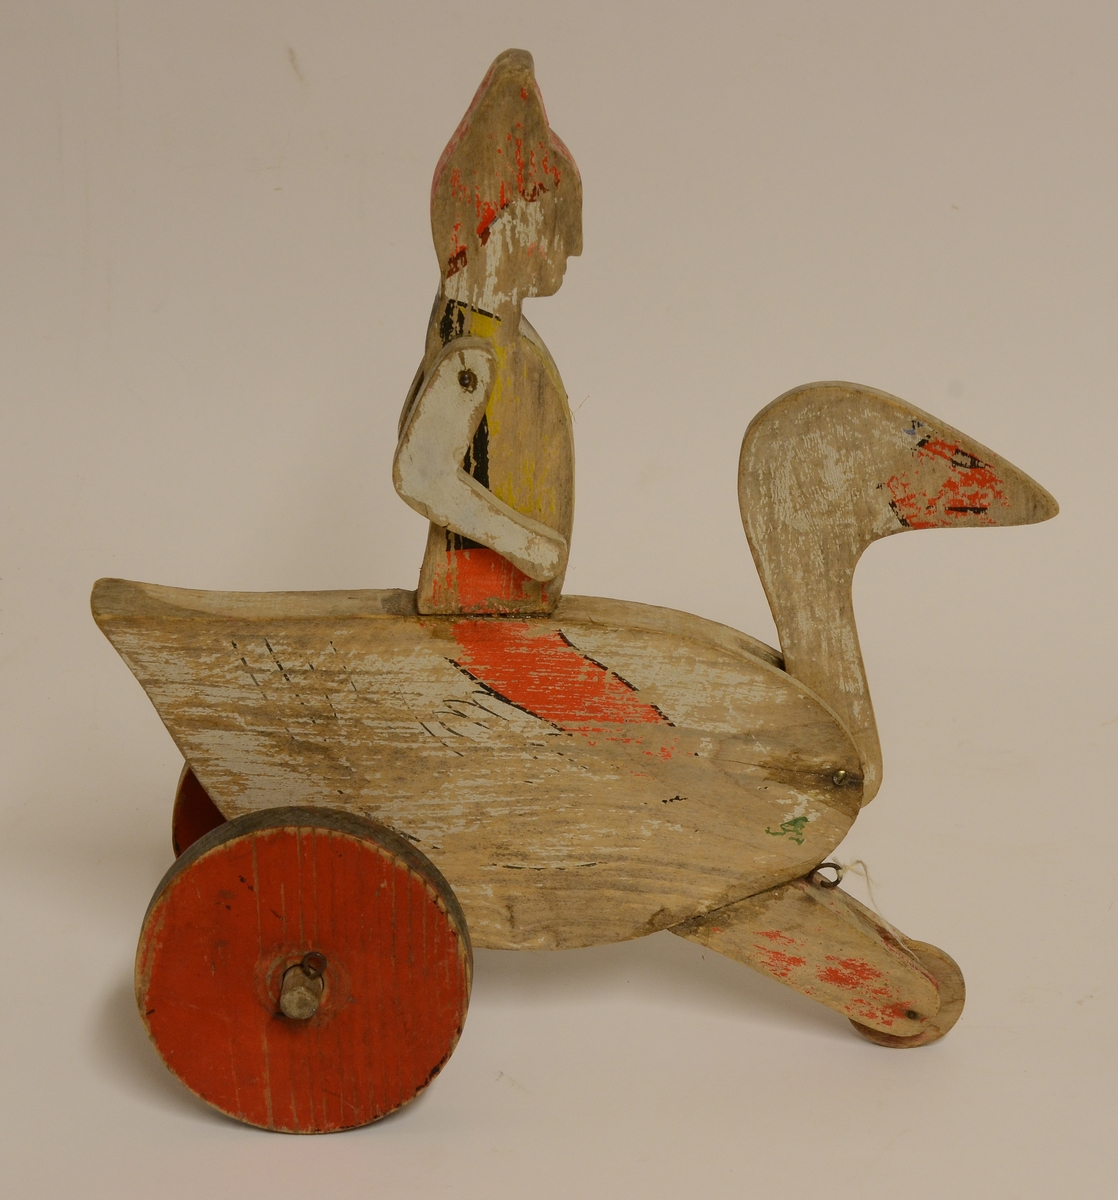 Leksak av trä i form av en gås med en pojke (Nils Holgersson) i röd luva på ryggen. Leksaken dras med ett snöre, rullar på tre trähjul. Målad i vitt, rött, gult, svart och brunt. Pojkens armar och gåsens huvud är svängbara samt fästa med spik.